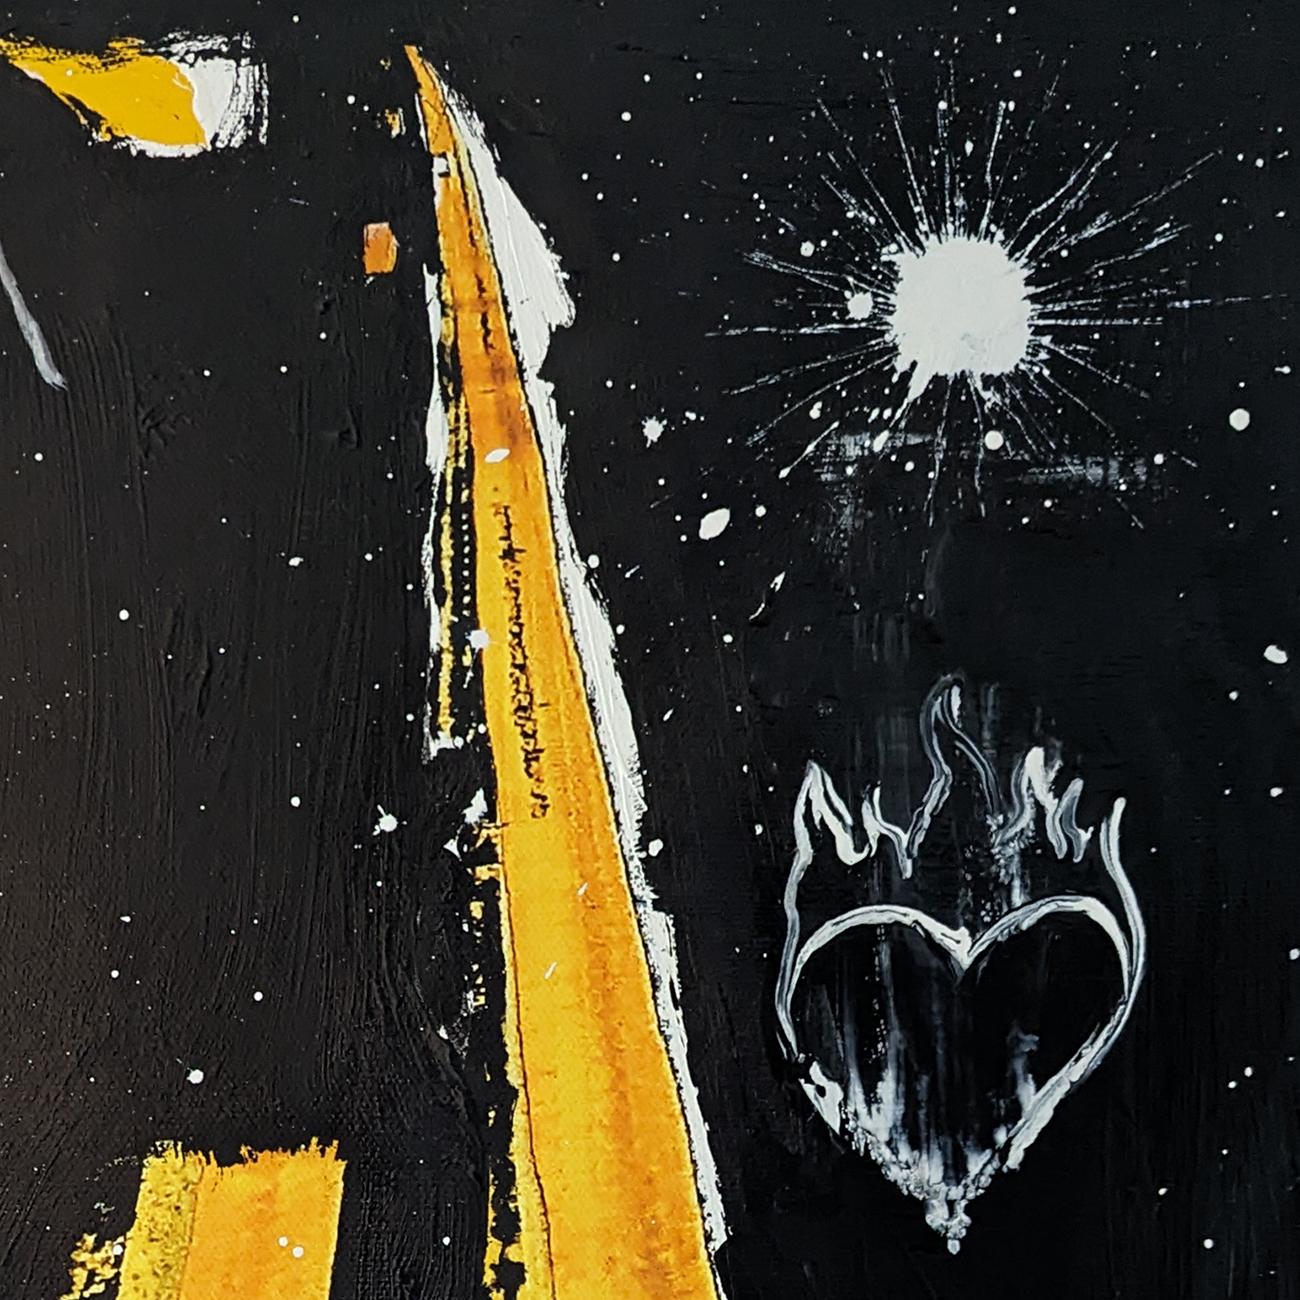 Heart of Fire NC CA (Abstrakte Malerei)
Acryl auf Leinwand, auf Holzunterlage gespannt - ungerahmt.
Dieses Werk ist exklusiv bei IdeelArt erhältlich.

Dieses Werk ist Teil der Reihe Asphalted Ad Astra.

Metamoderne, existenzielle, farbenfrohe